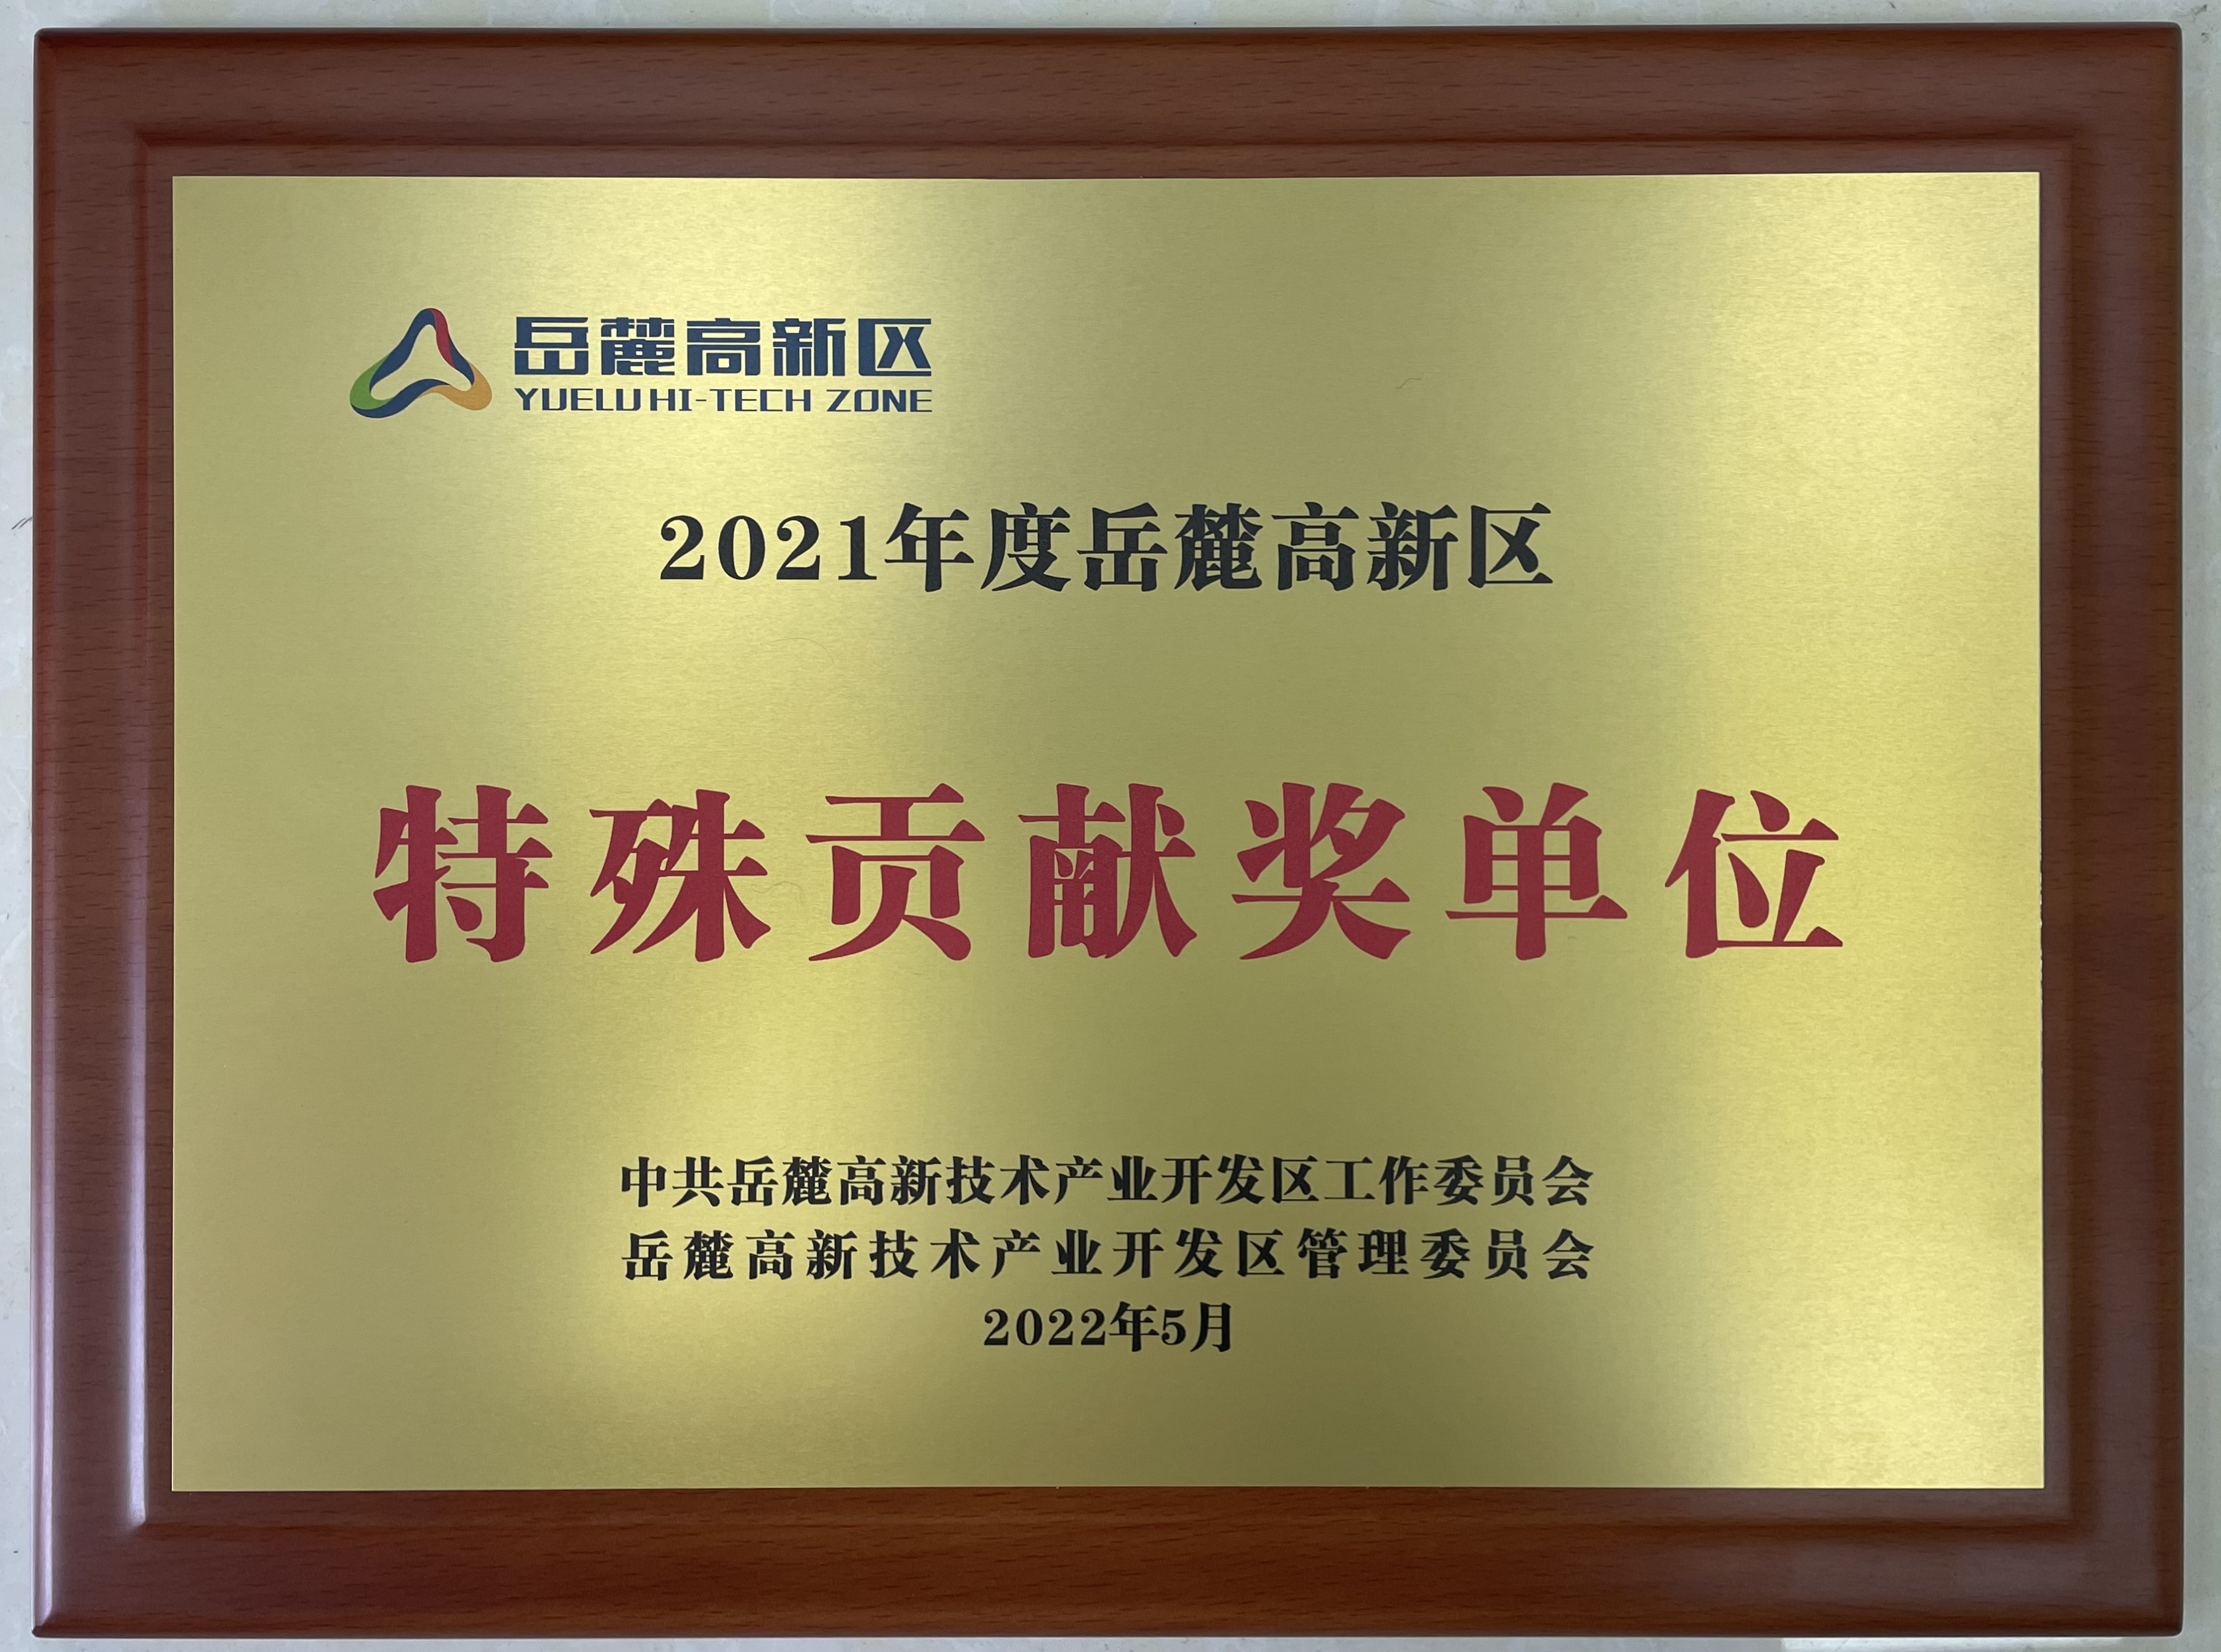 2022年5月，智谷集团获岳麓高新区2021年度特殊贡献奖单位荣誉称号